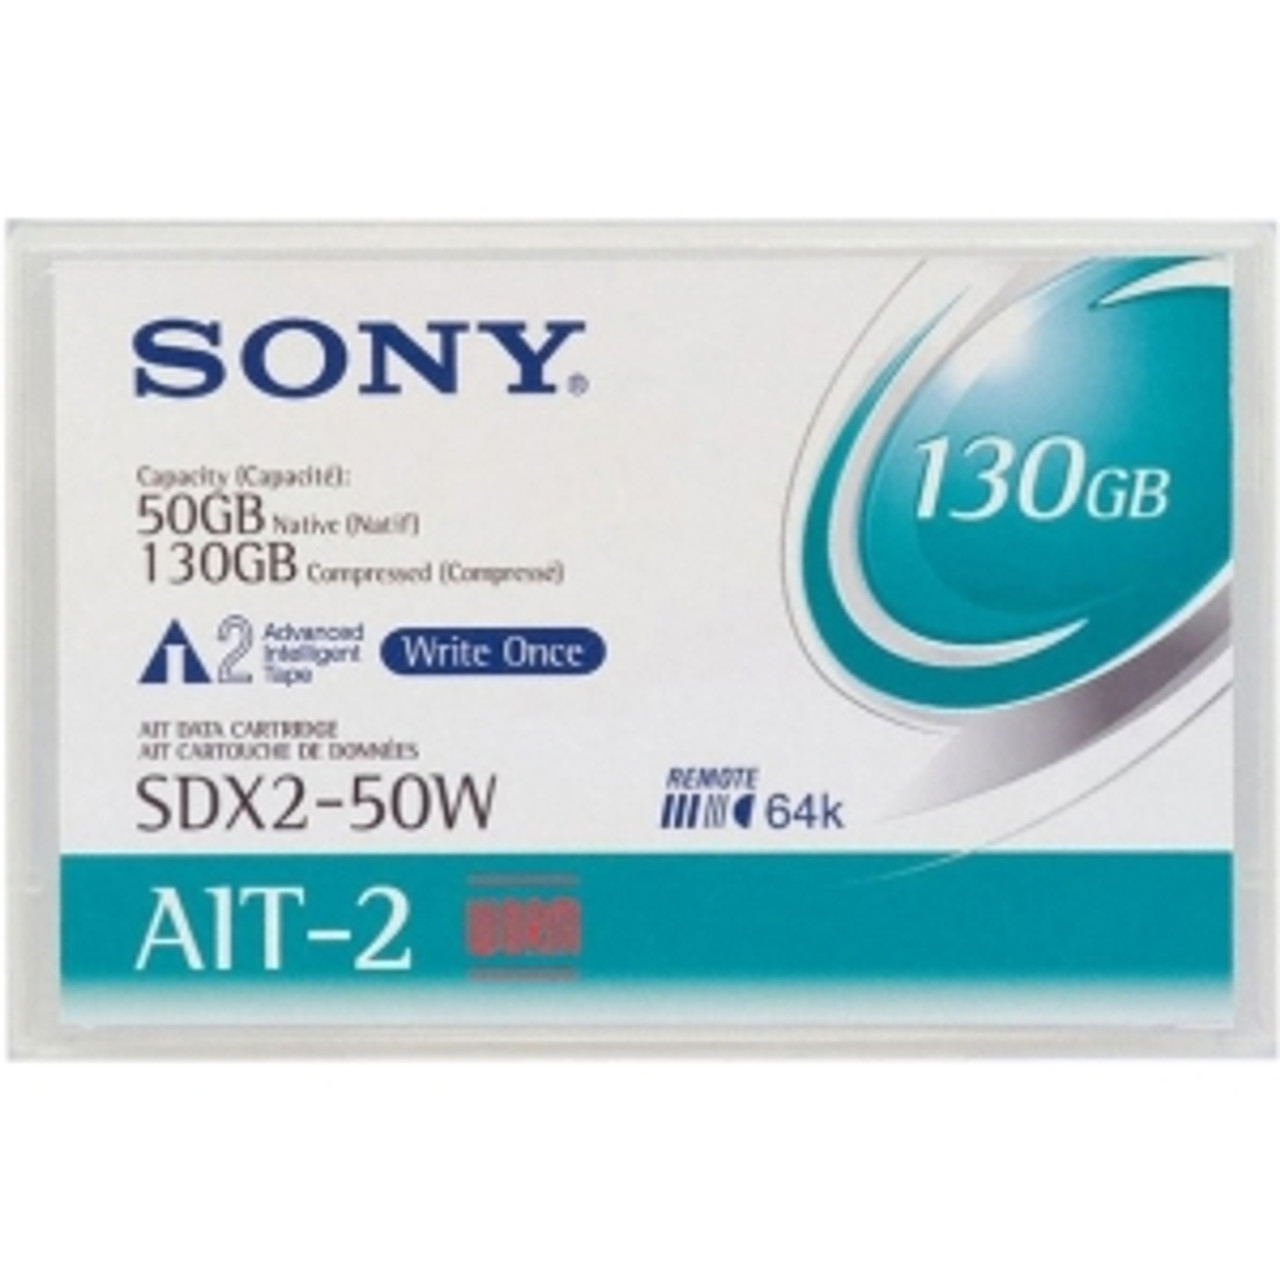 SDX250W//AWW - Sony AIT-2 WORM Tape Cartridge - AIT AIT-2 - 50GB (Native) / 130GB (Compressed)